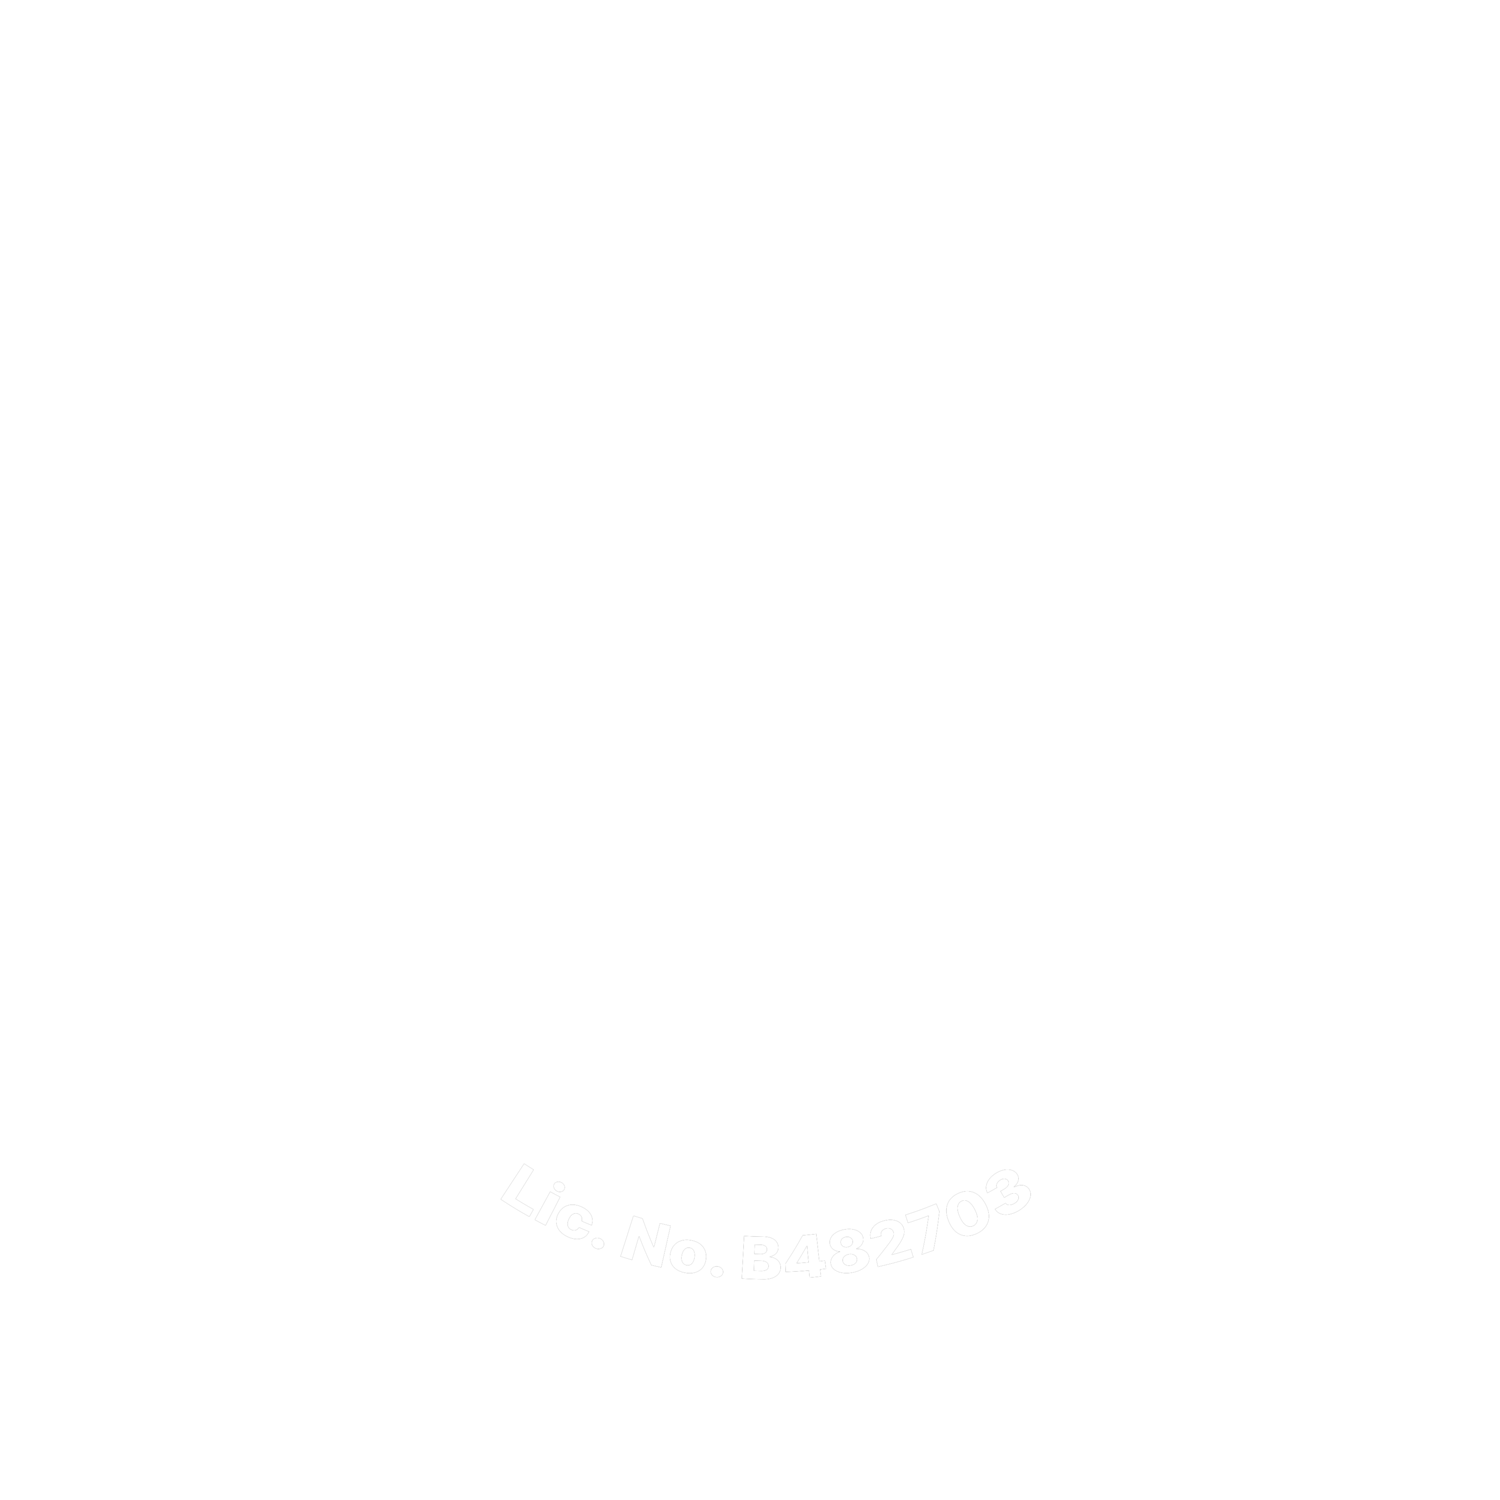 Fernandez Designs & Builders, Inc.